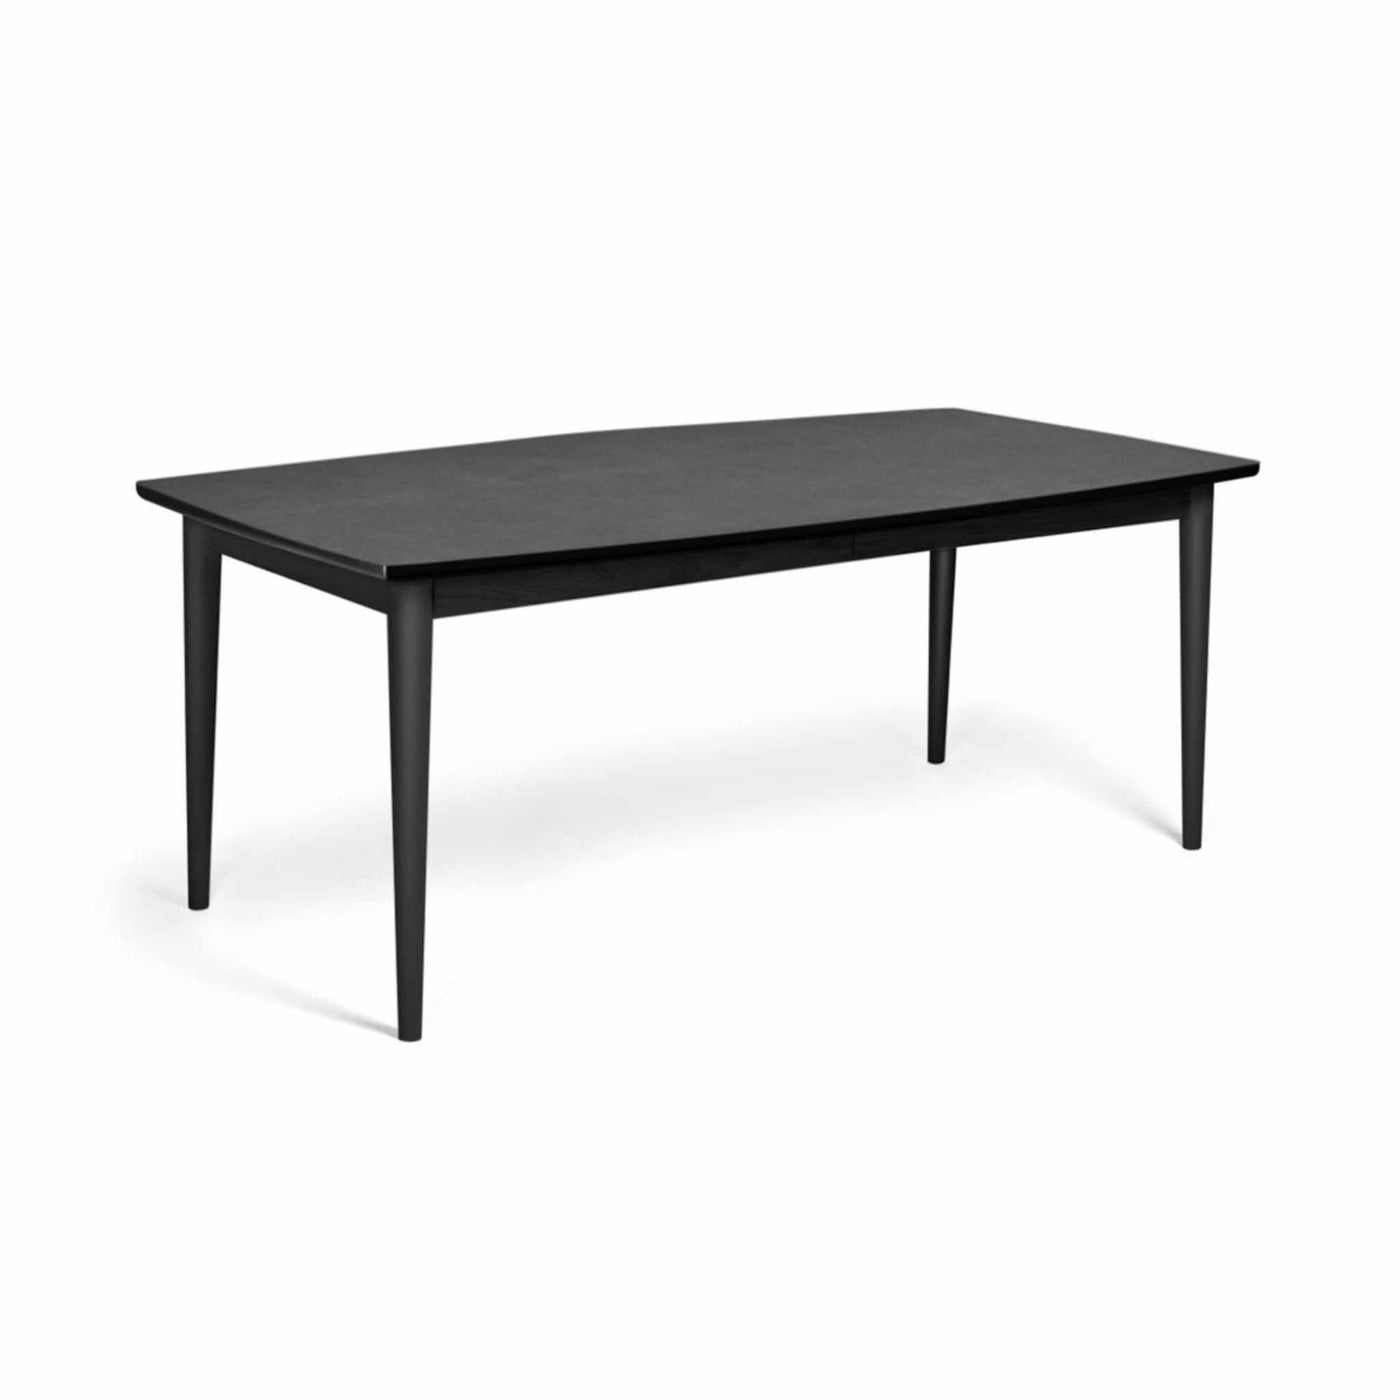 Svane Design bårdformet idyl spisebord med bordplade i stone look laminat og ben i sortbejdset bøg